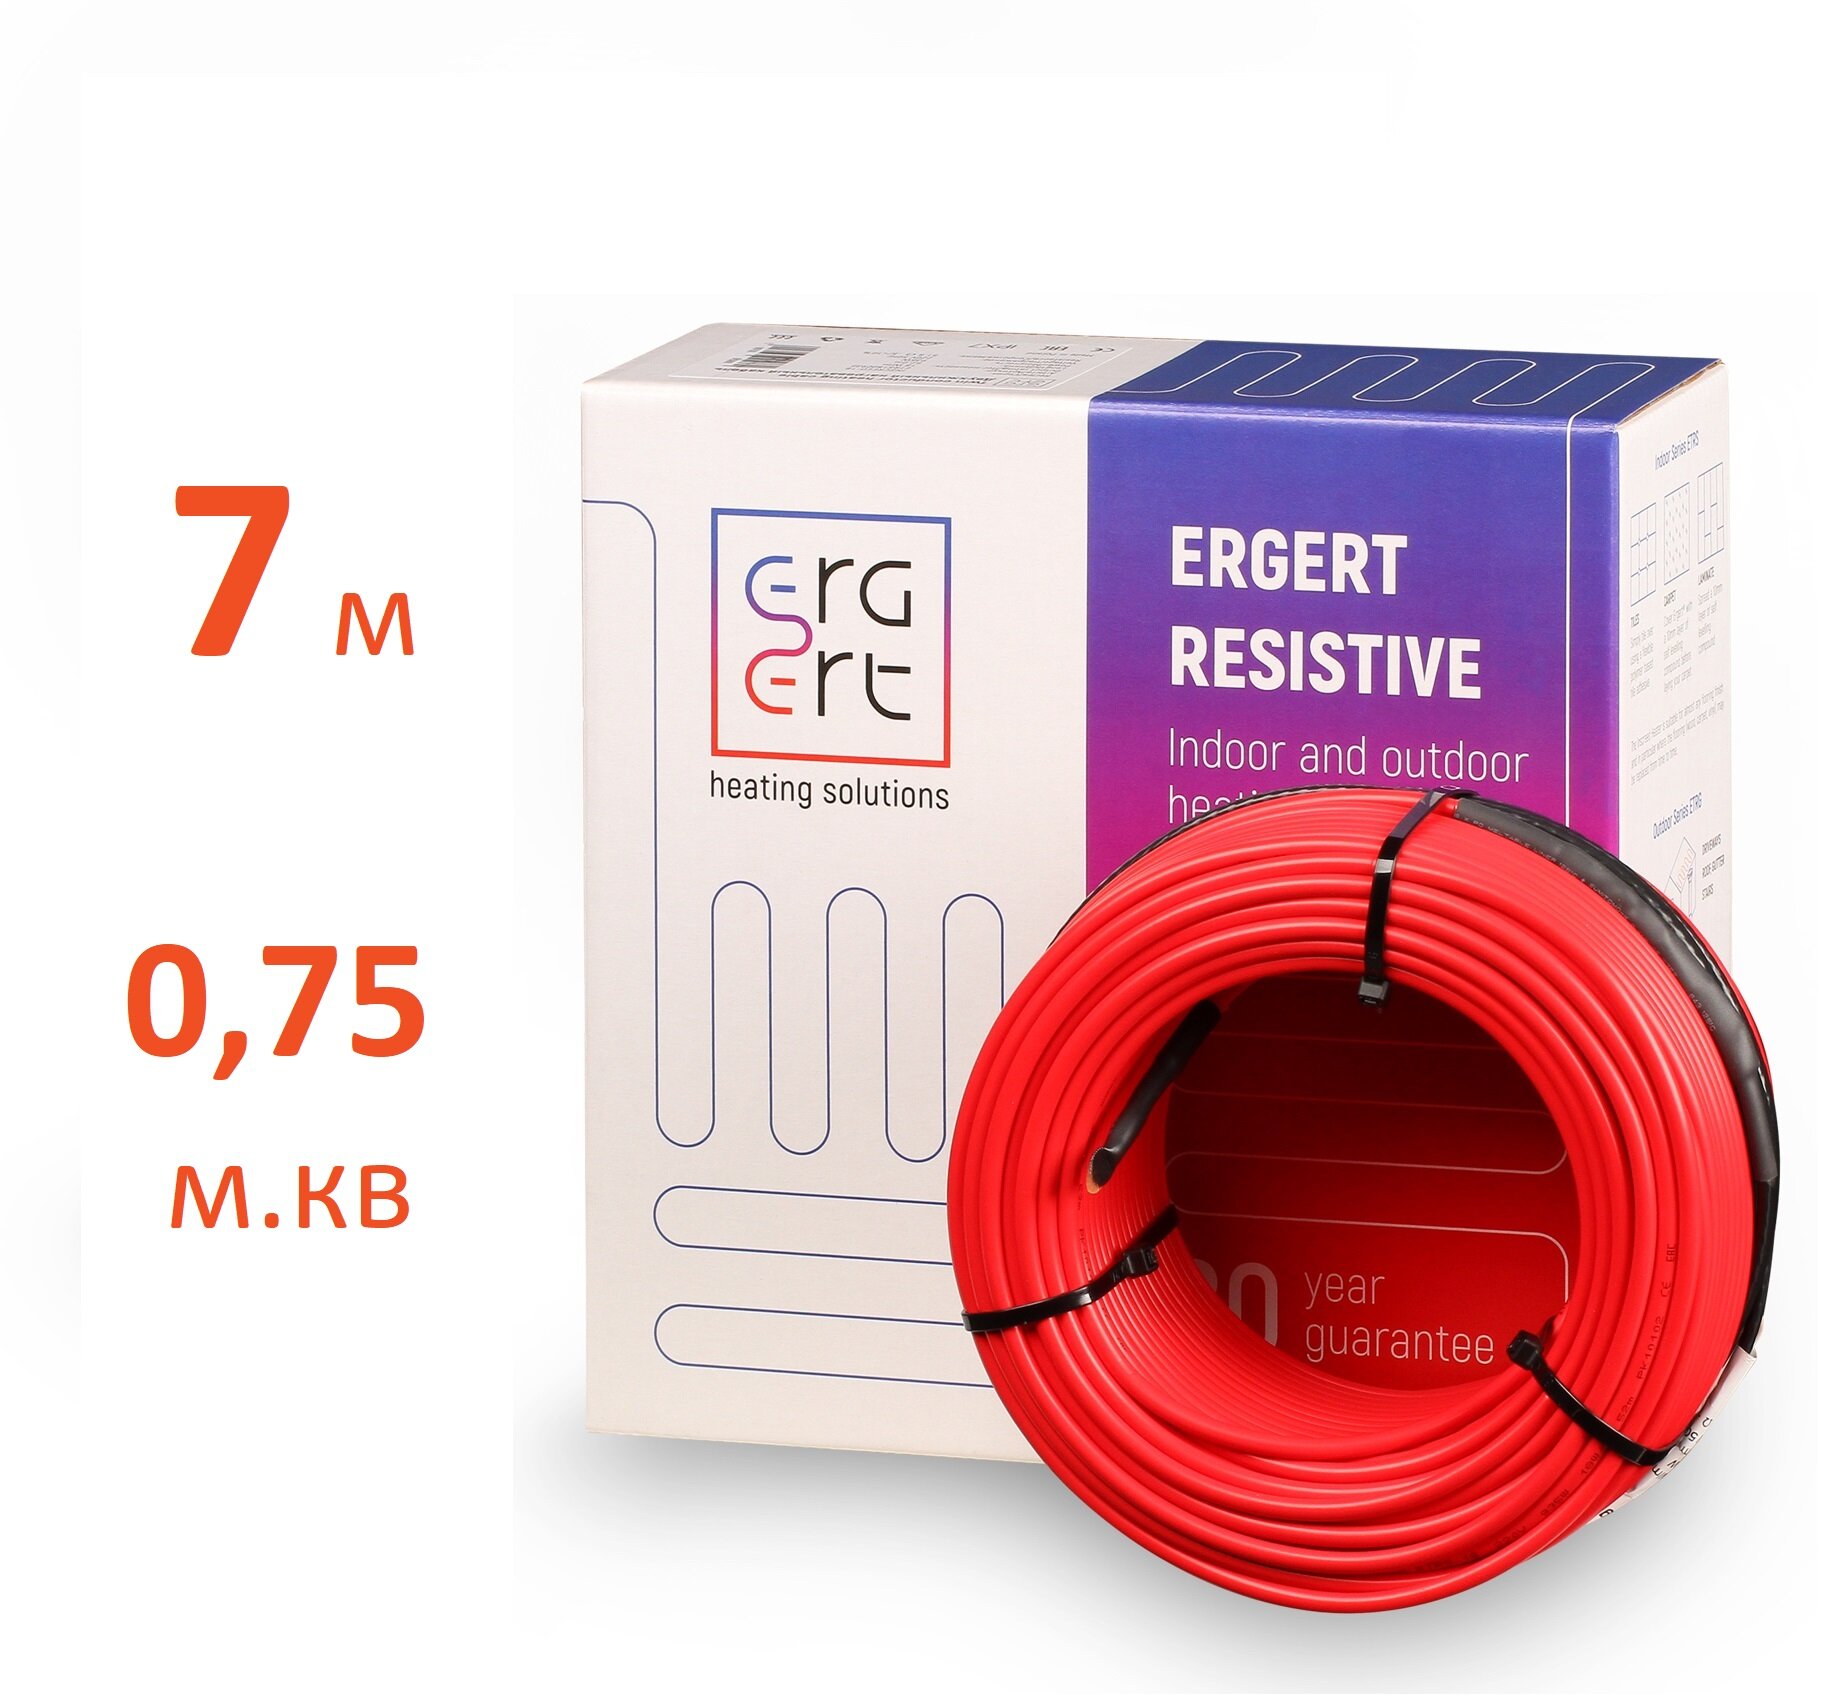 Греющий кабель, ERGERT, ETRS-18, 1.1 м2, длина кабеля 7 м